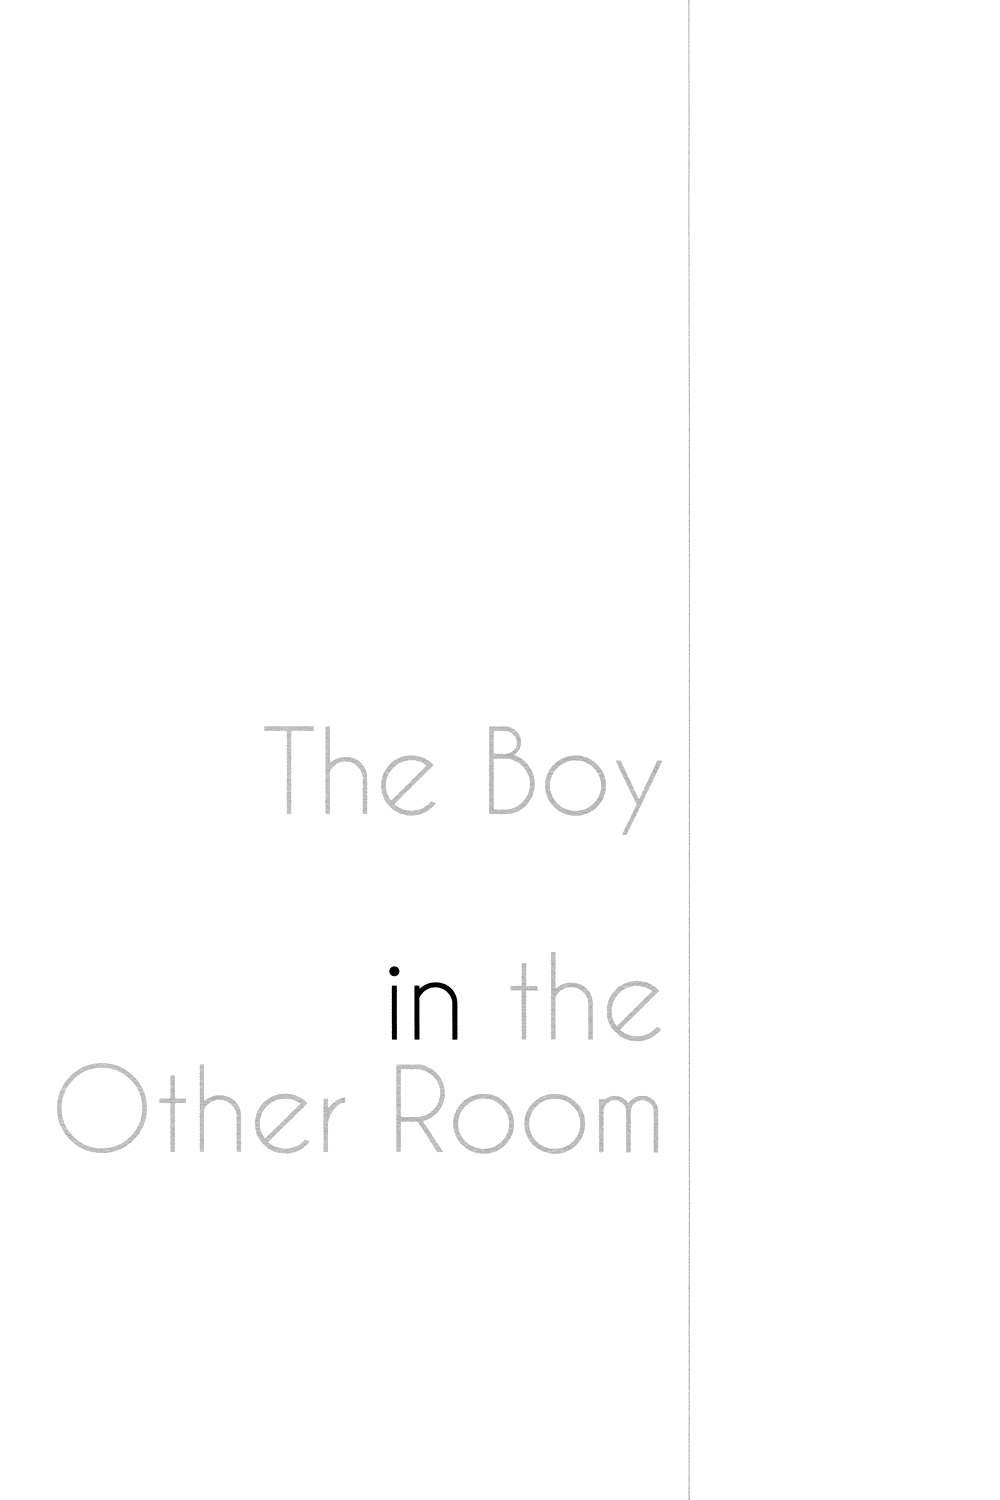 (ザ・ワールド) [ハルミツ (大橋)] The Boy in the Other Room (ジョジョの奇妙な冒険)